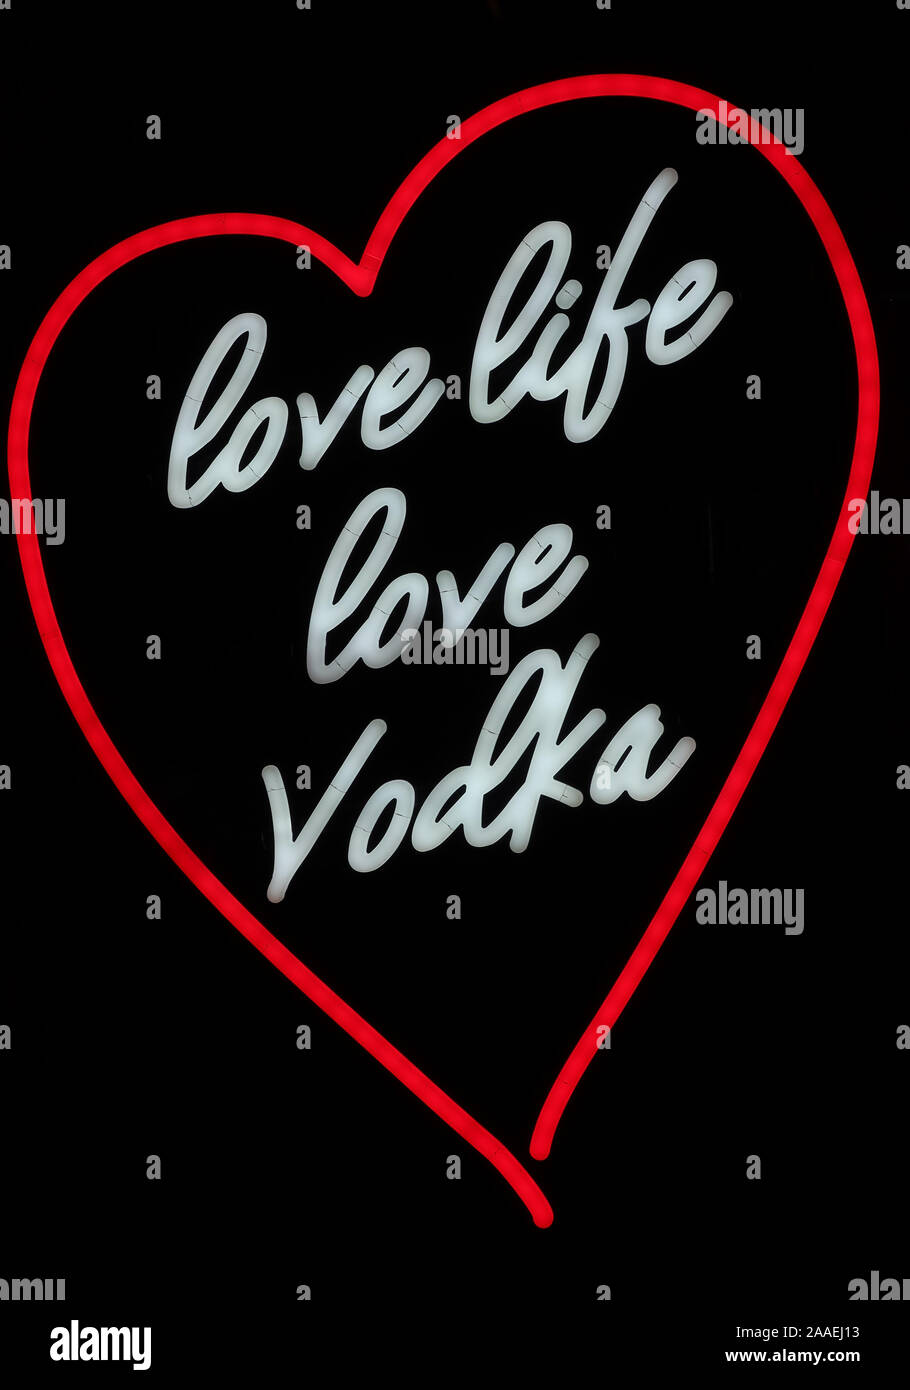 Cuore insegna al neon, amare la vita l'amore vodka firmare in bianco e rosso, rivoluzione,glasgow Scozia - vodka artigianale Foto Stock